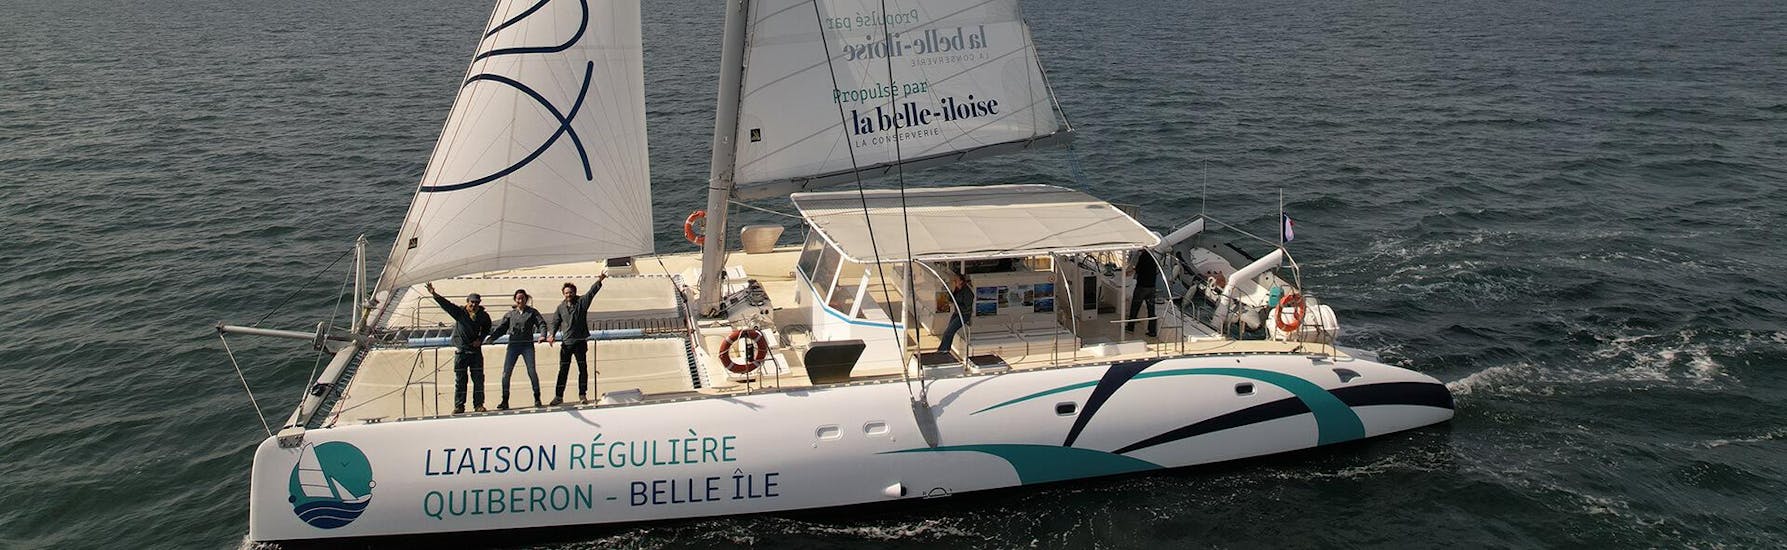 The catamaran of Iliens - La navette qui met les voiles Quiberon on its way to Belle-Île.